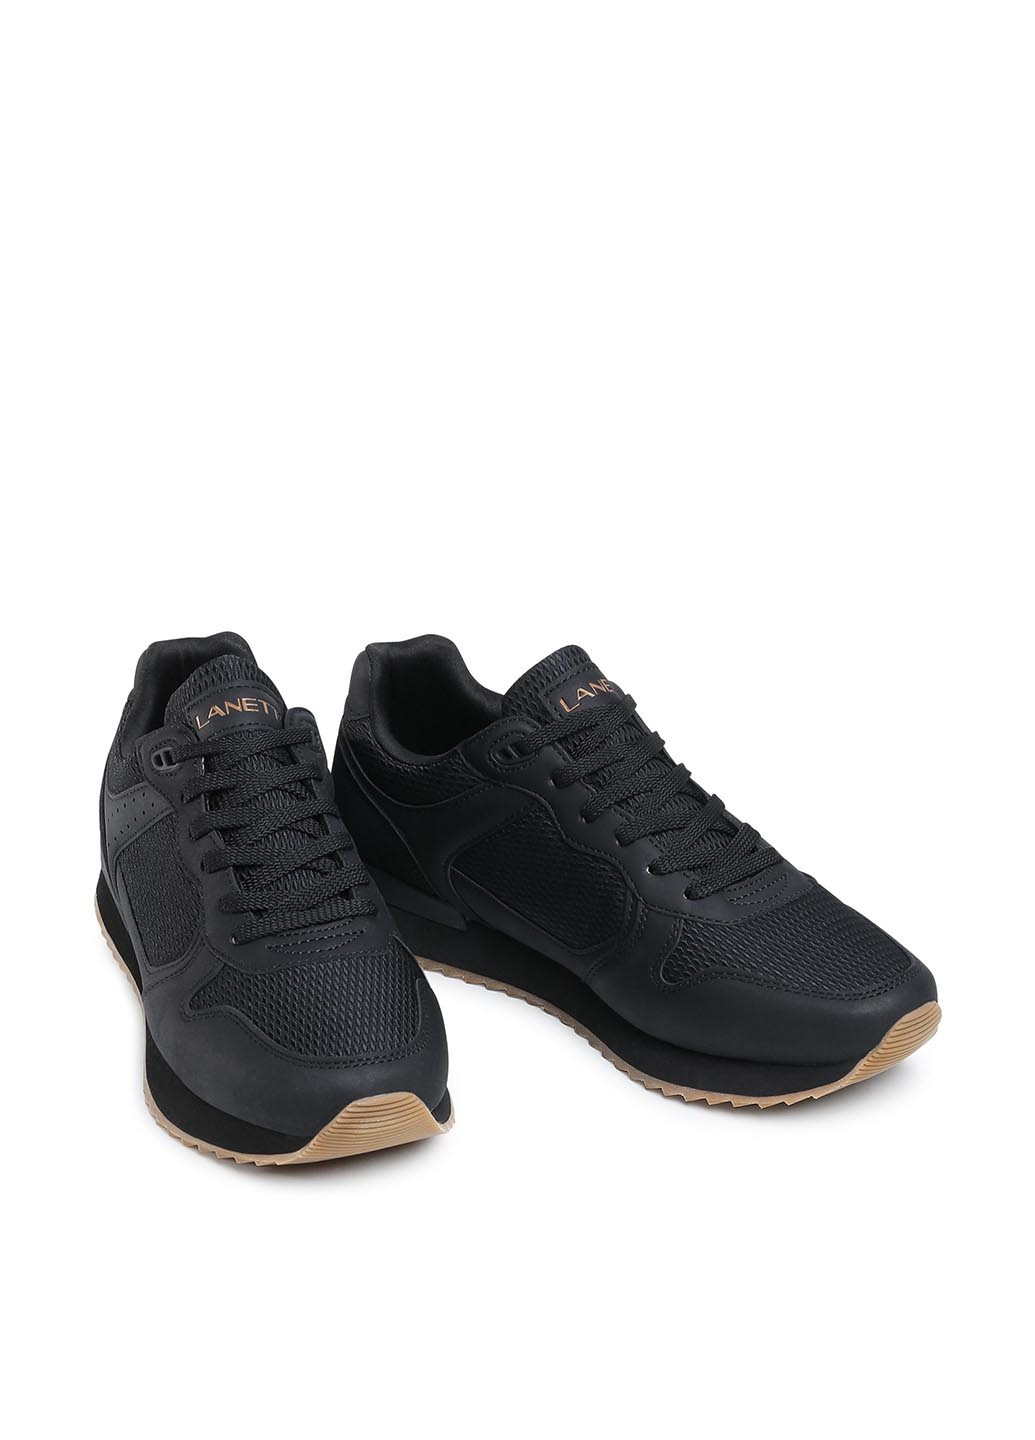 Черные демисезонные кроссовки Lanetti MP07-01433-02